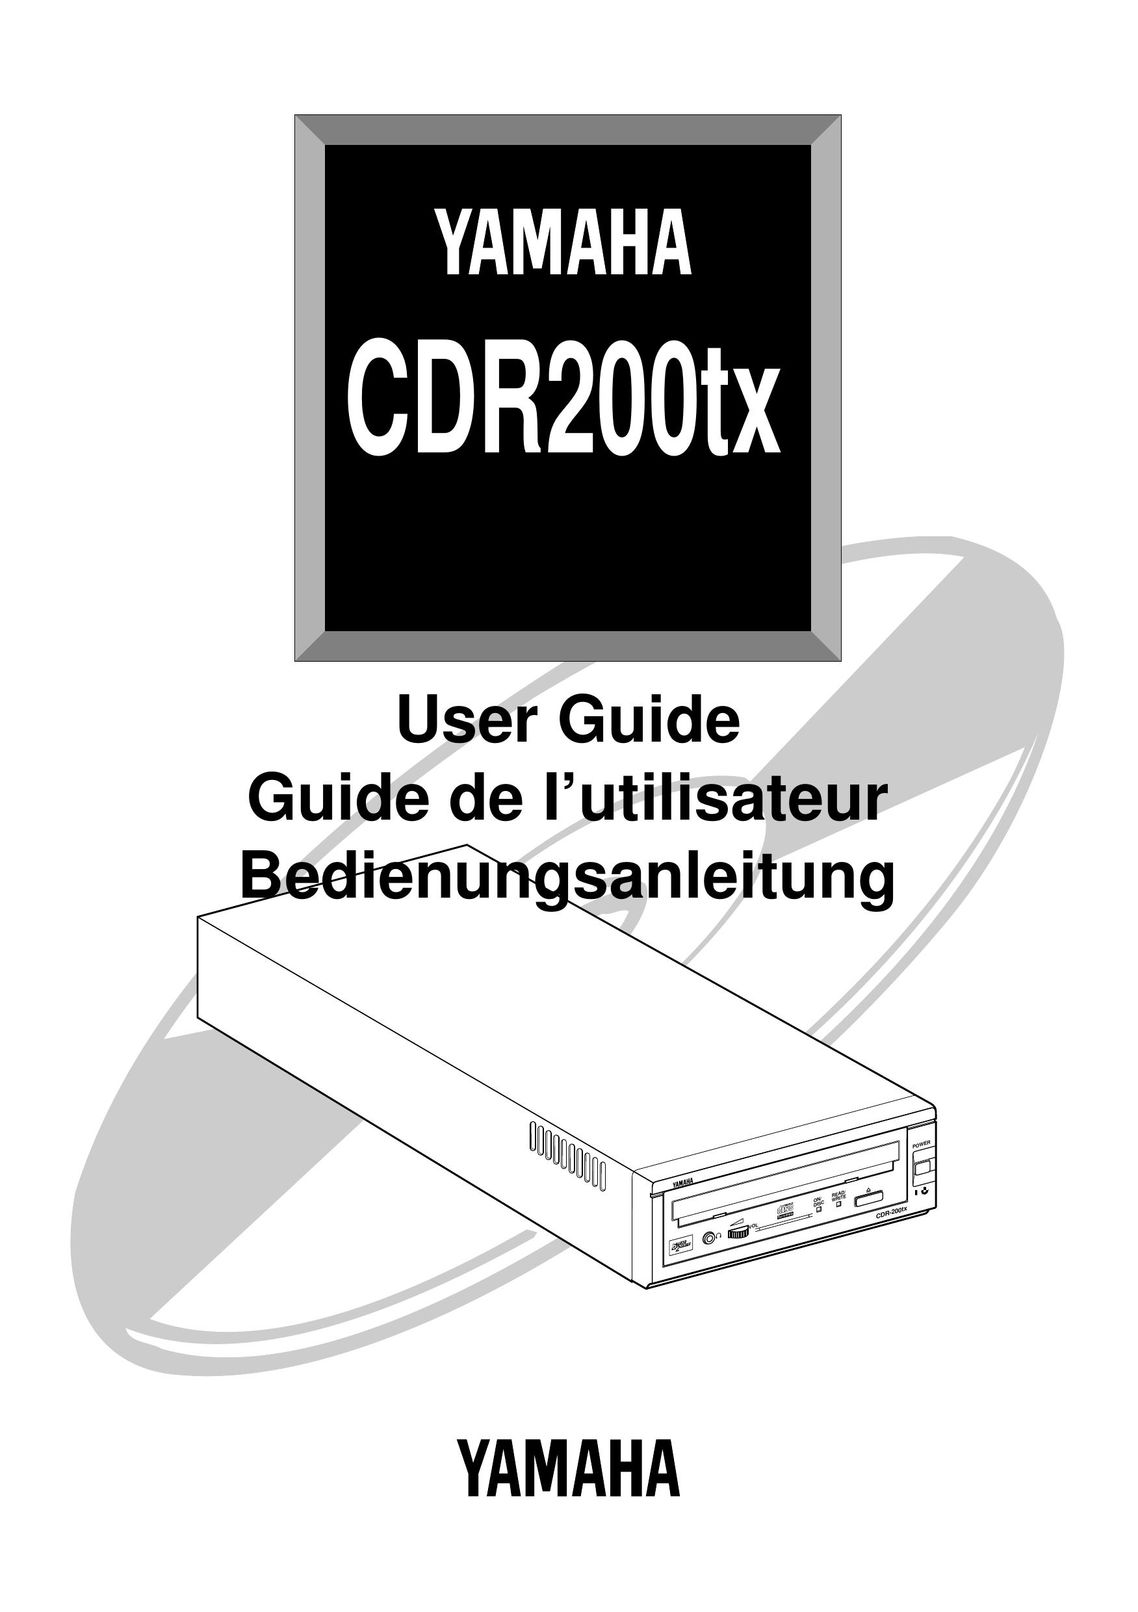 Yamaha CDR200tx CD Player User Manual